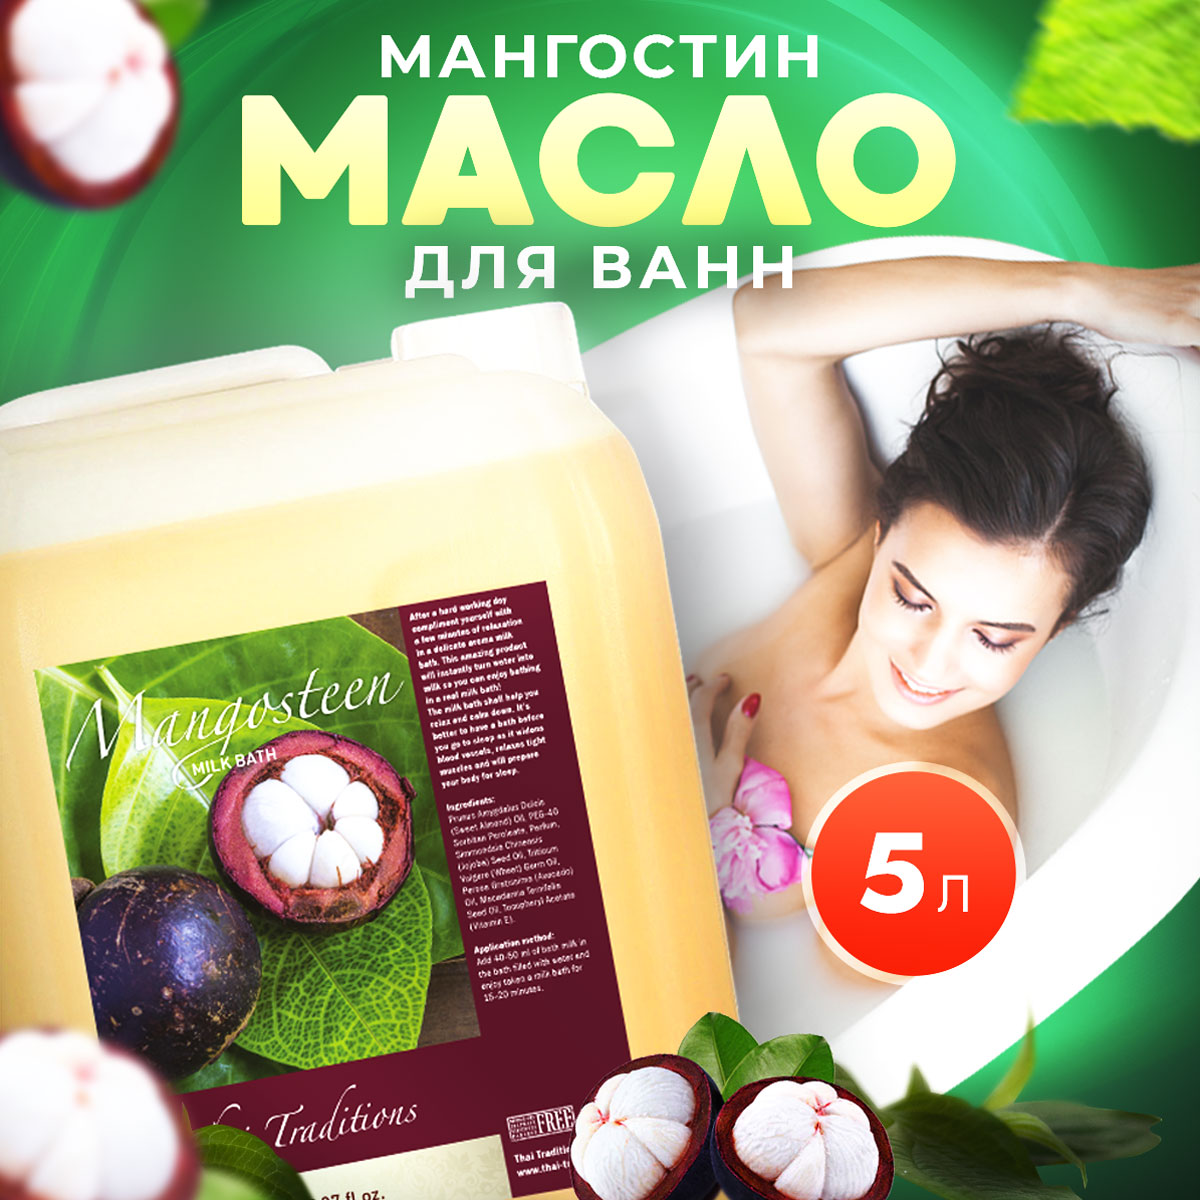 Масло для ванны и душа Thai Traditions натуральное гидрофильное увлажняющее Мангостин 5 л соль для ванны ванна красоты крымская fito косметик 500г 30мл 3шт